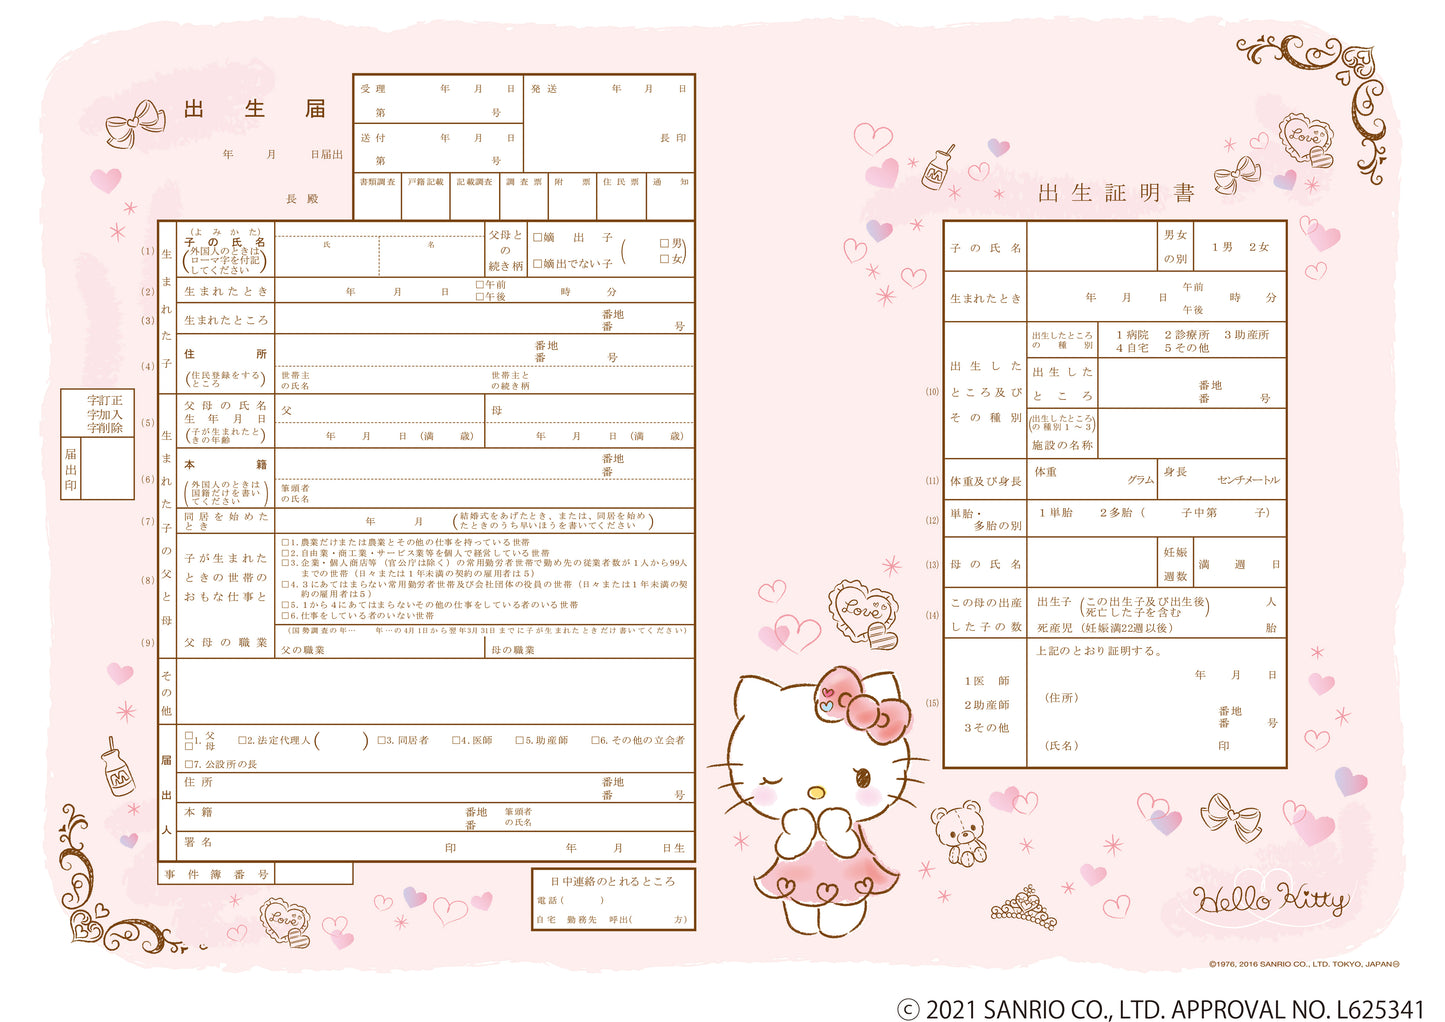 出生届 Hello Kitty Romance Pink【オリジナル命名紙付】